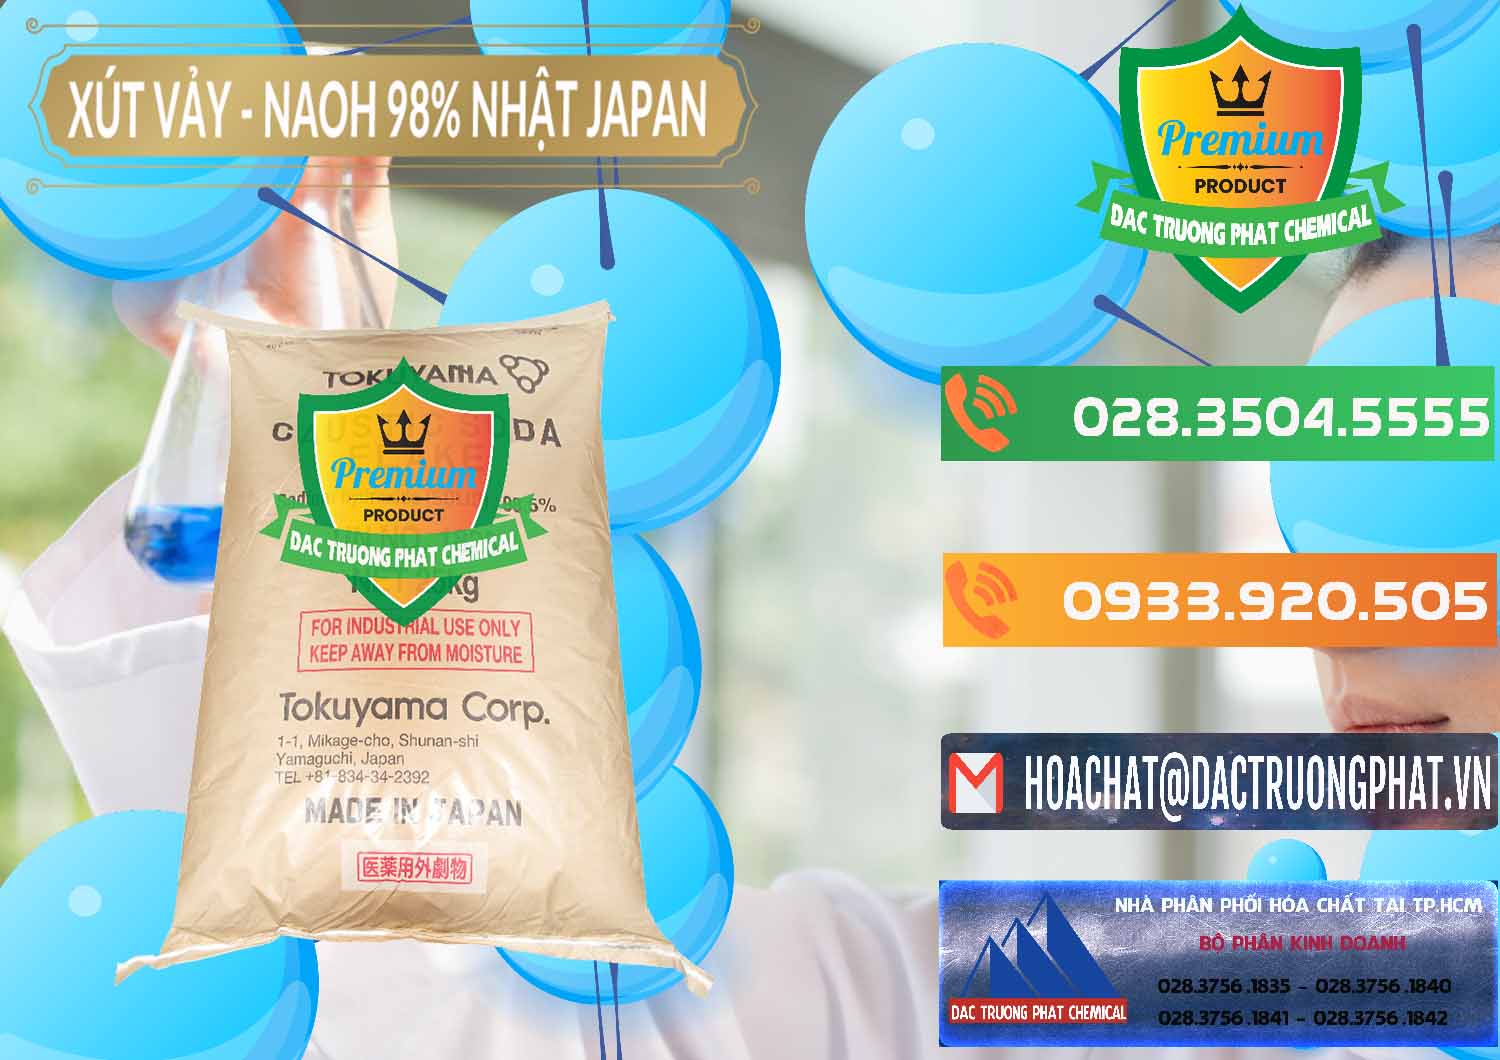 Cty kinh doanh & bán Xút Vảy - NaOH Vảy 98% Tokuyama Nhật Bản Japan - 0173 - Nơi cung ứng ( phân phối ) hóa chất tại TP.HCM - hoachatxulynuoc.com.vn